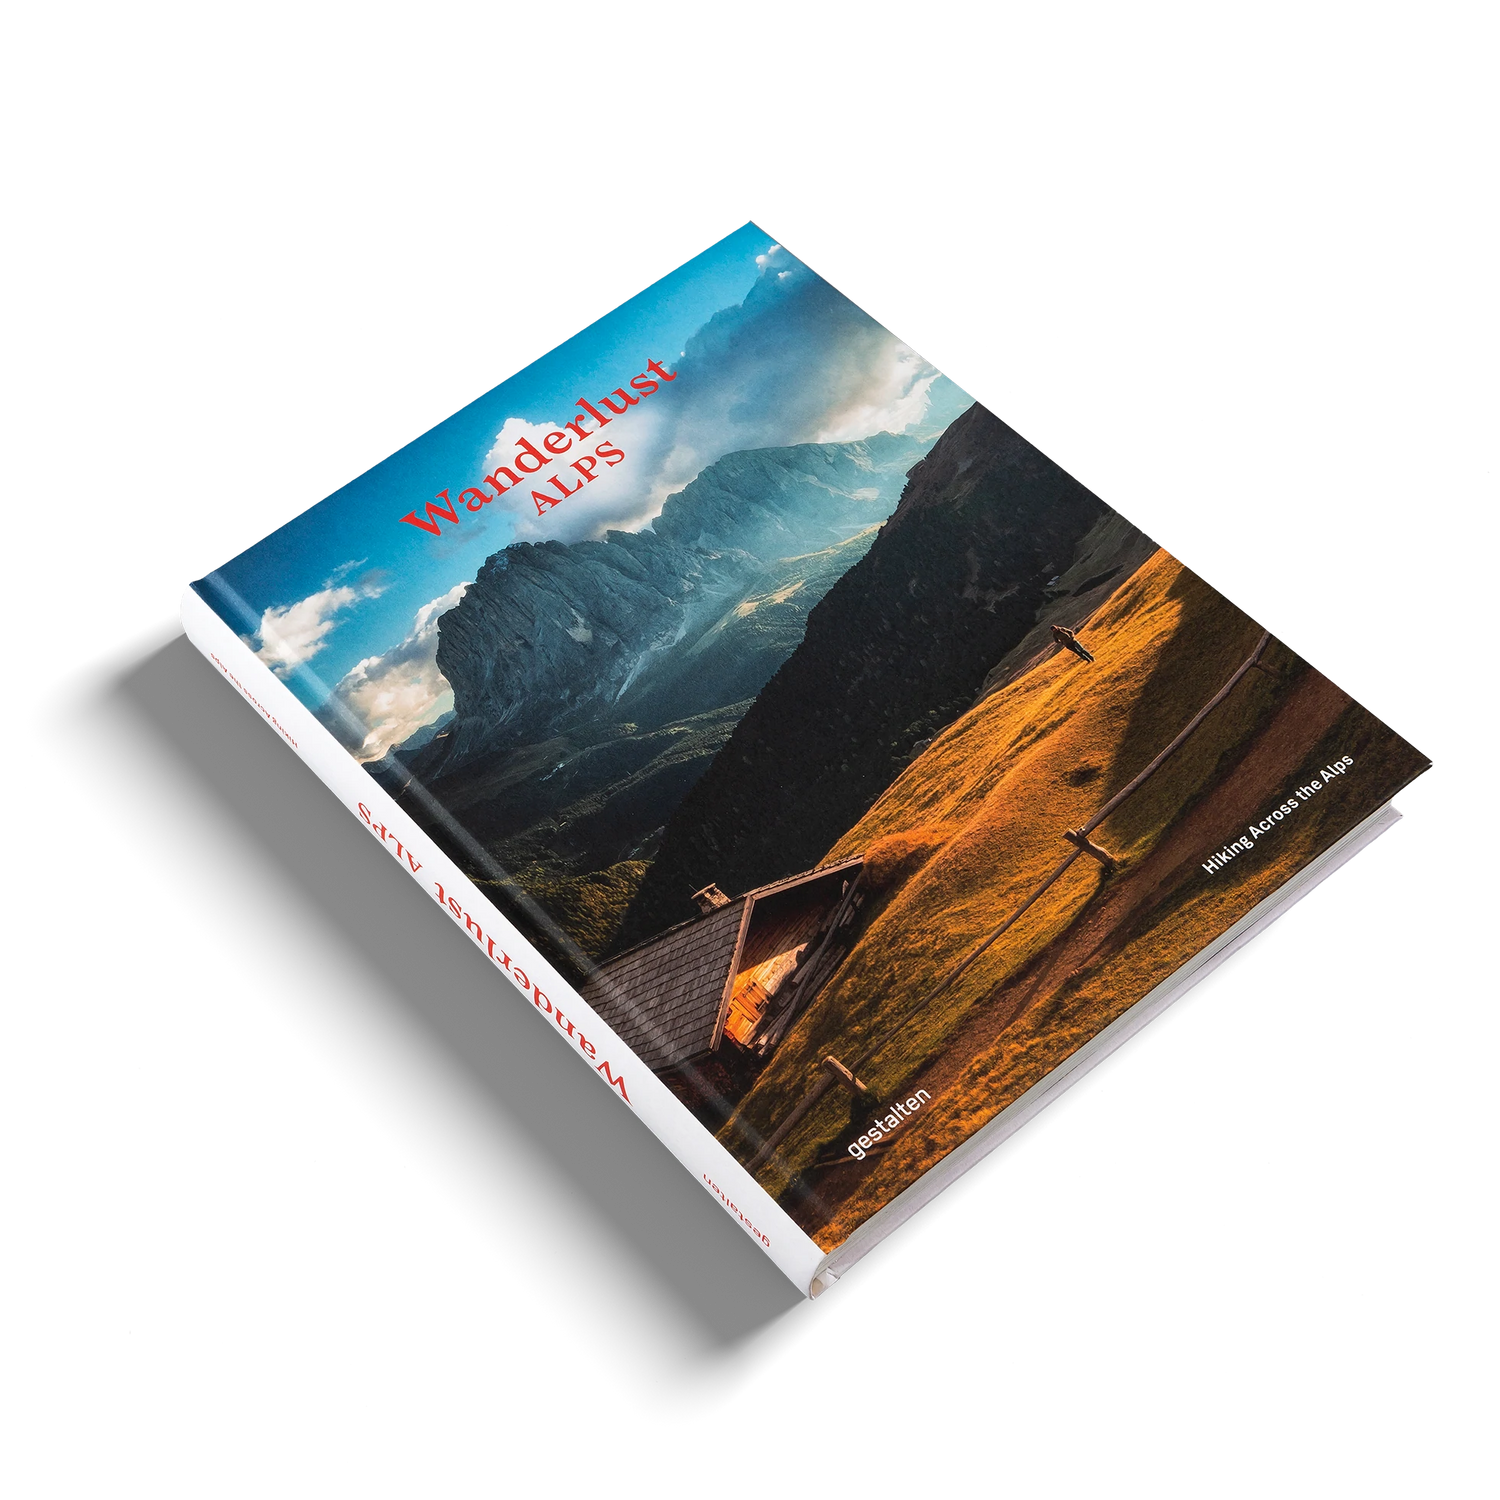 Wanderlust Alps | Backcountry Books